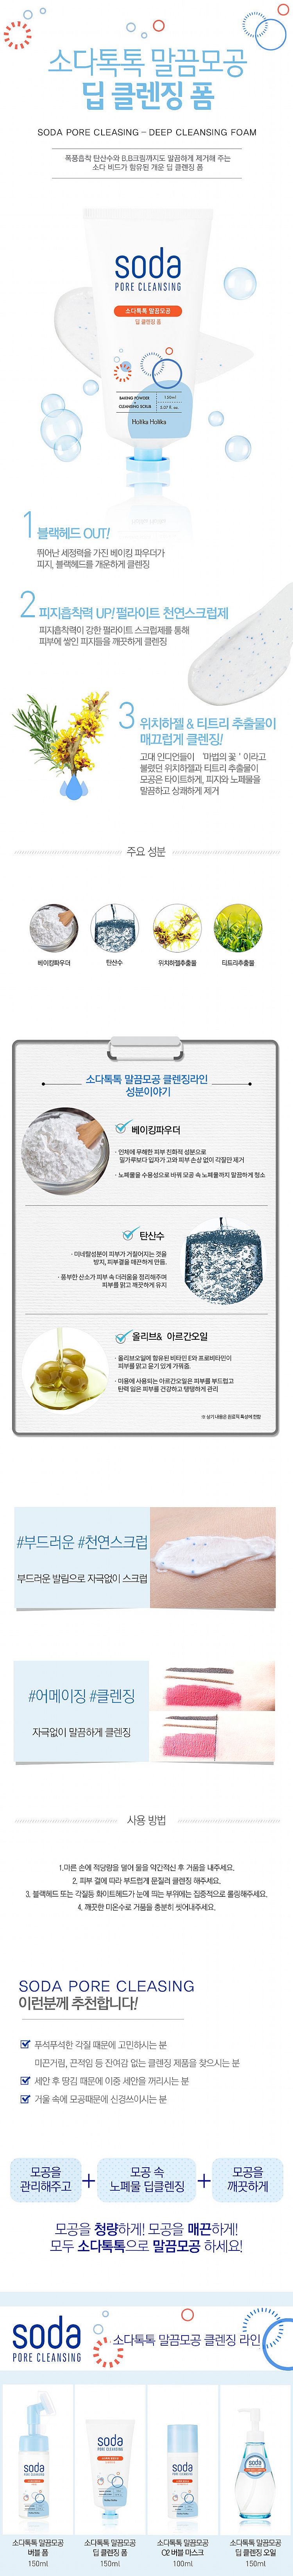 韓國 臉部保養 洗面乳 臉部保養 臉部保養 粉刺